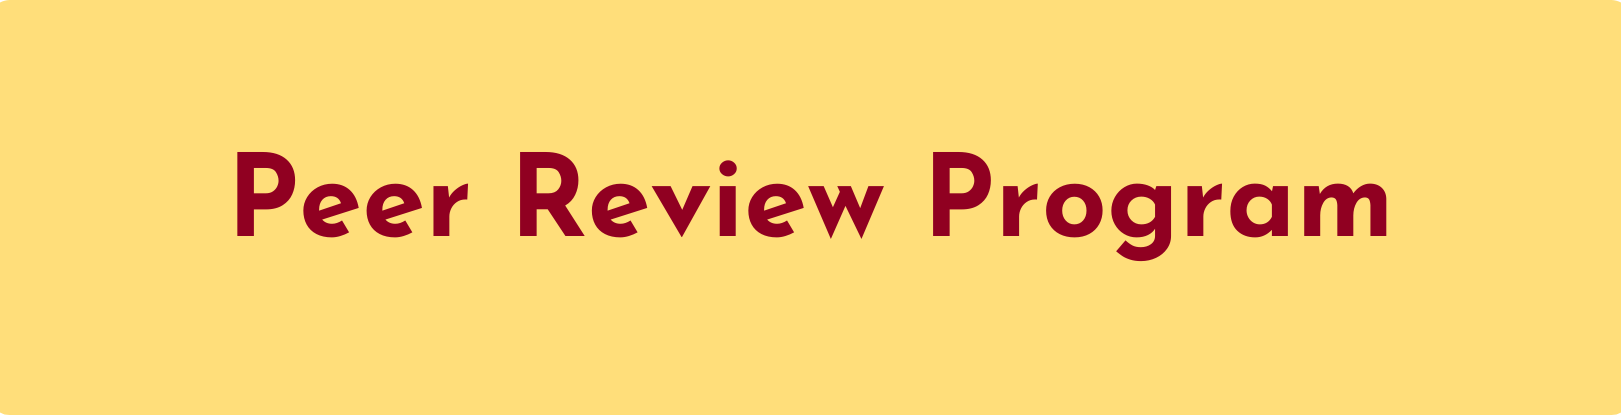 MCC Peer Review Program